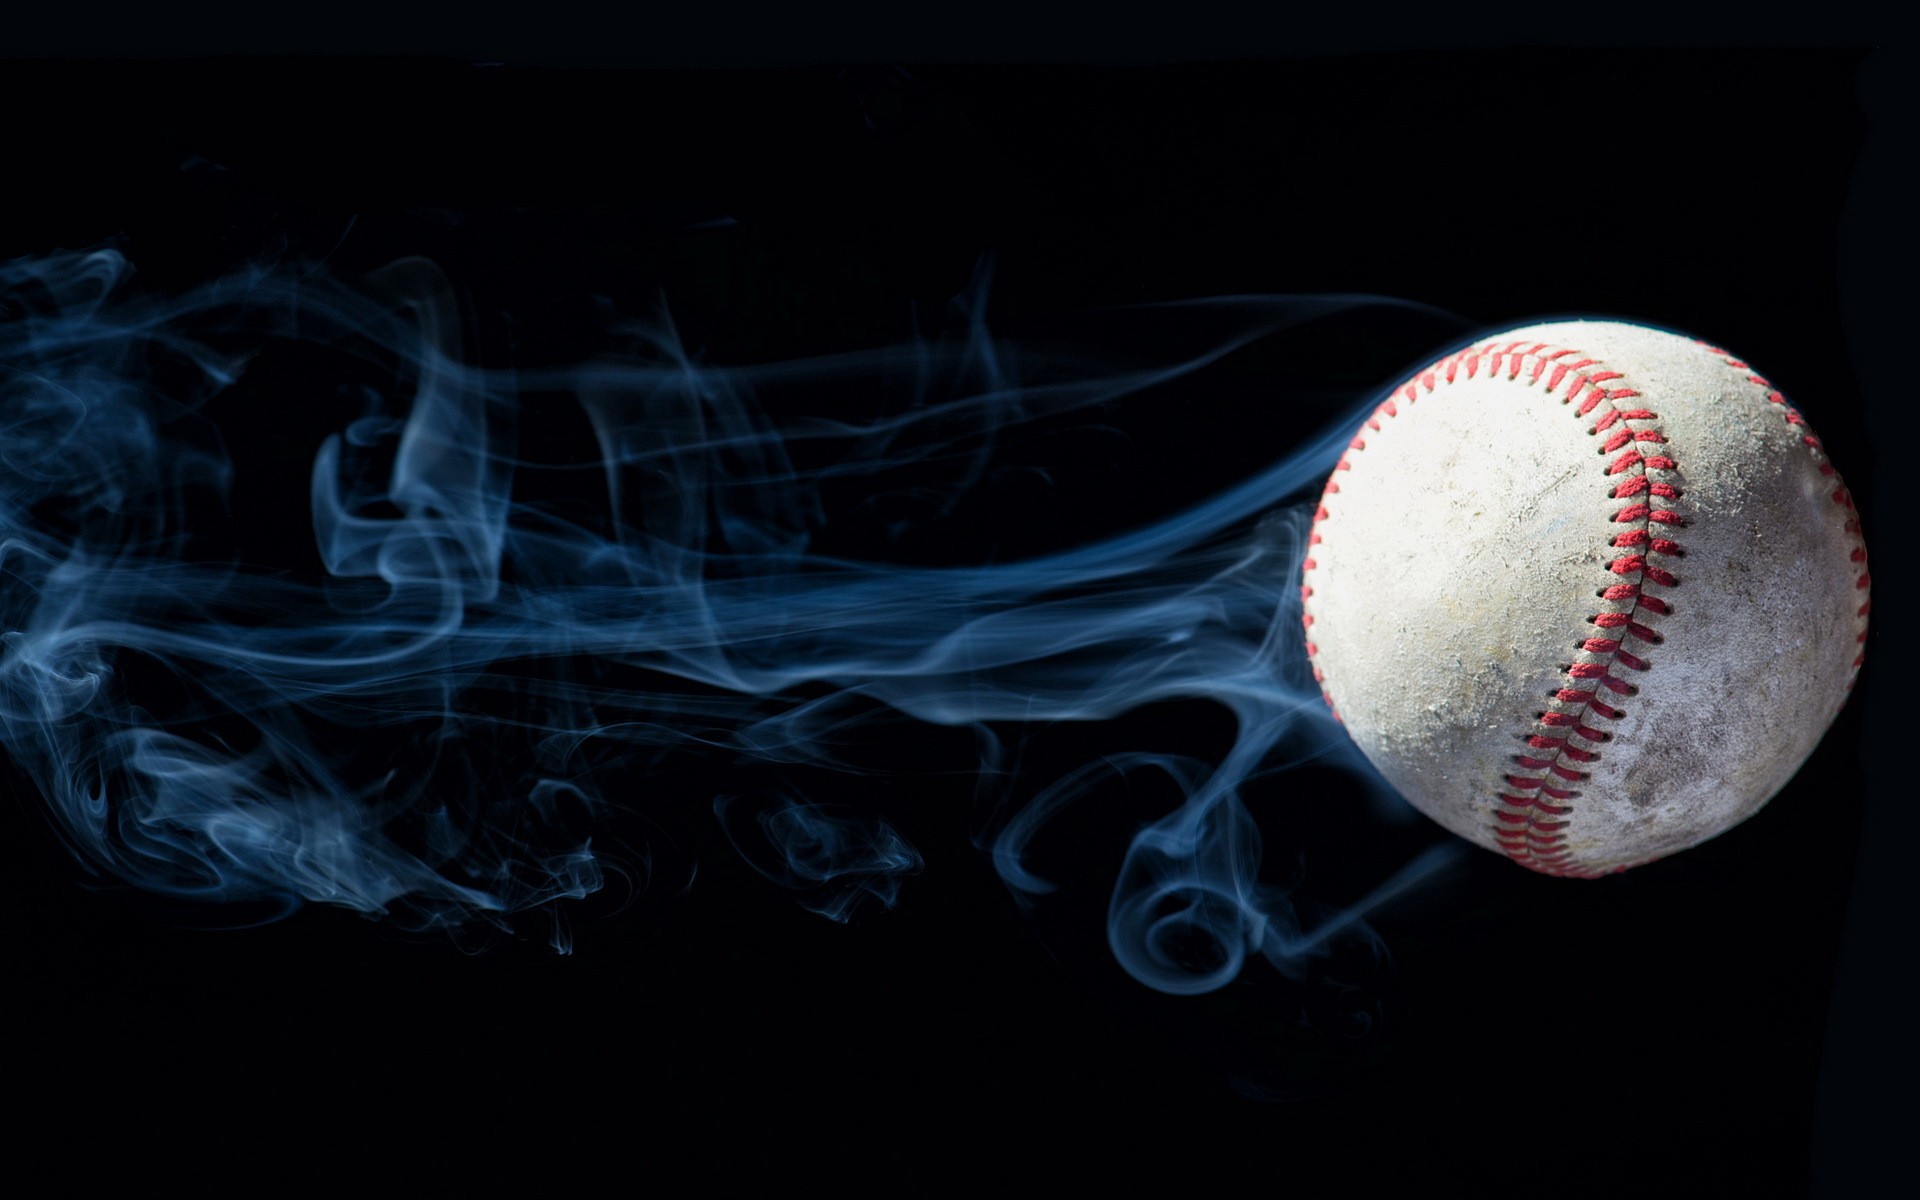 beisbol wallpaper,ball,baseball,sports equipment,sport venue,baseball glove